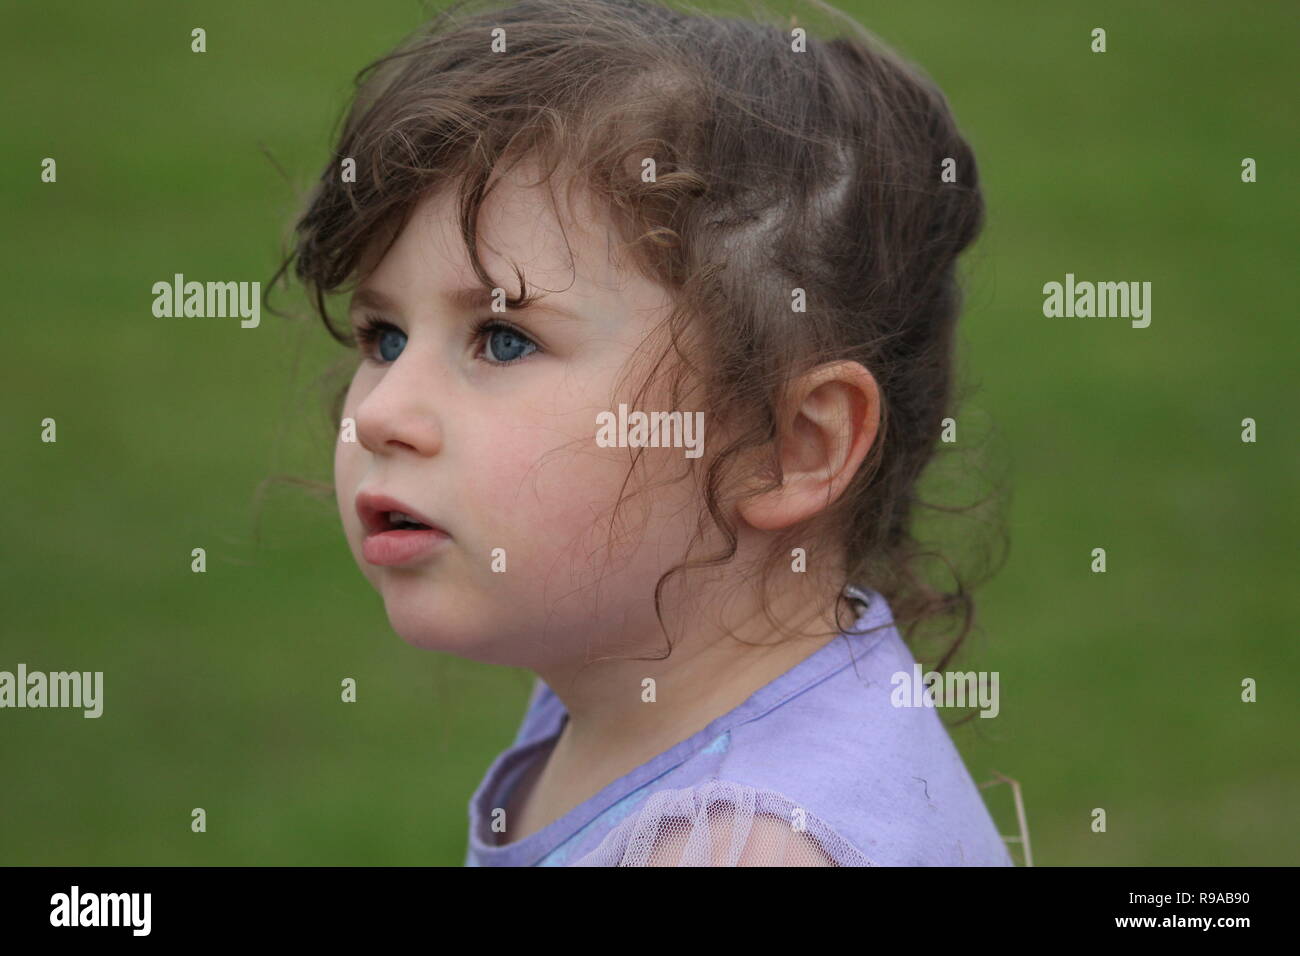 Giovane bruna bambino con grandi occhi blu che guardano lontano dalla macchina fotografica su uno sfondo di erba Foto Stock